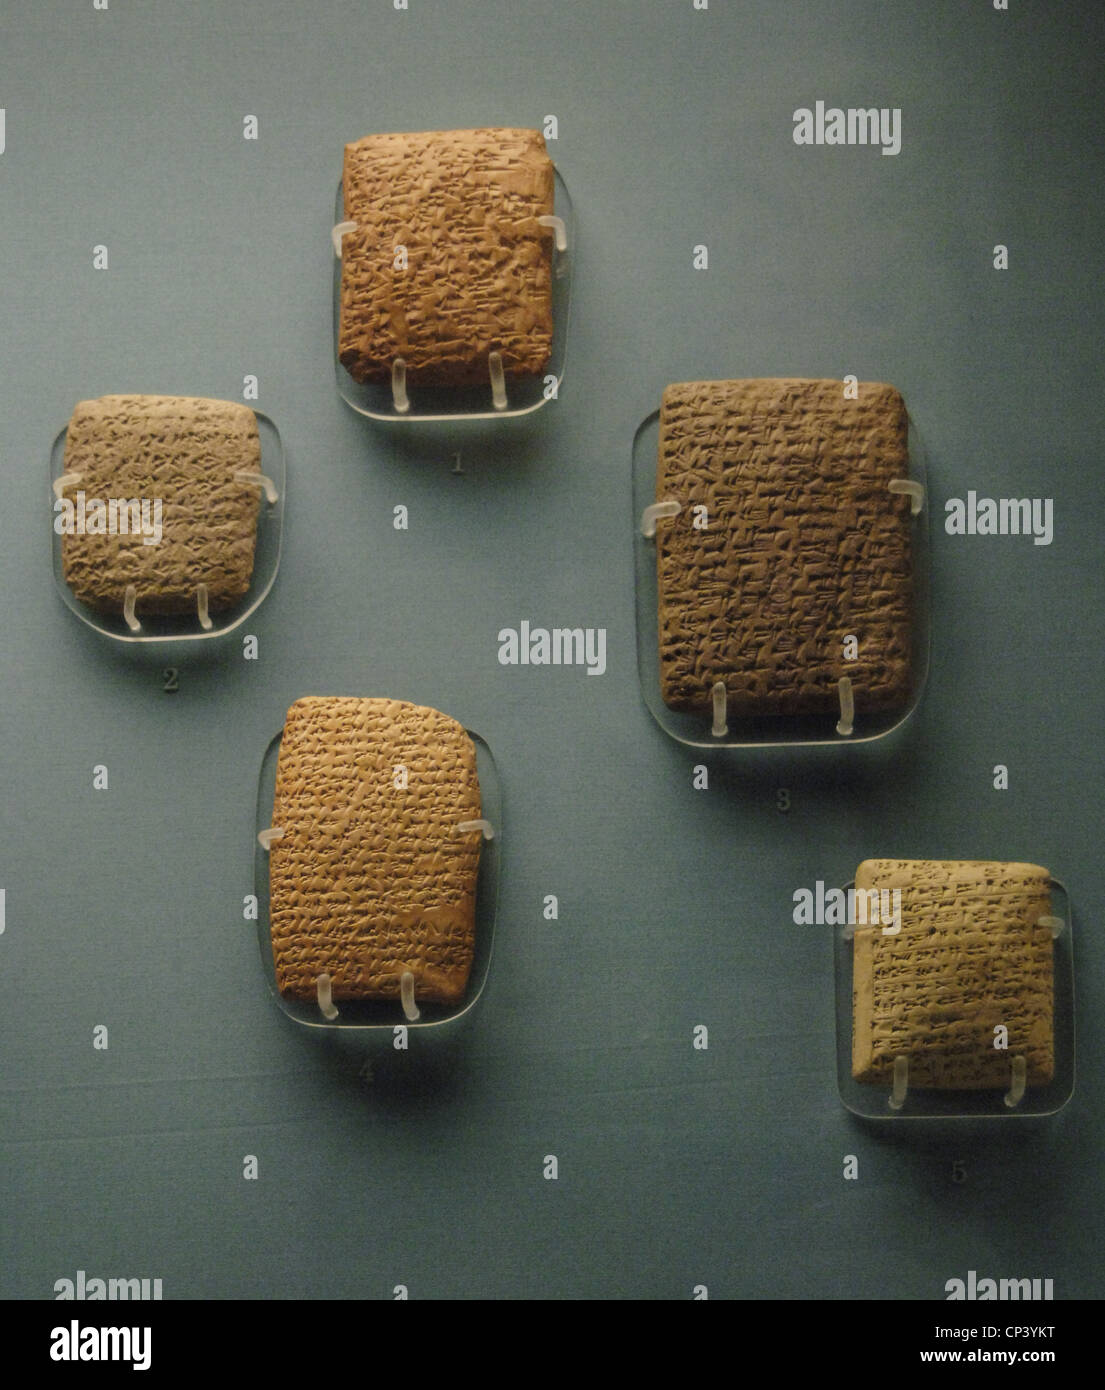 Amarna lettere. Il XIV secolo A.C. Tavolette di argilla con script cuneiforme, per la maggior parte scritti in accadico. Da Amarna (Alto Egitto). Foto Stock